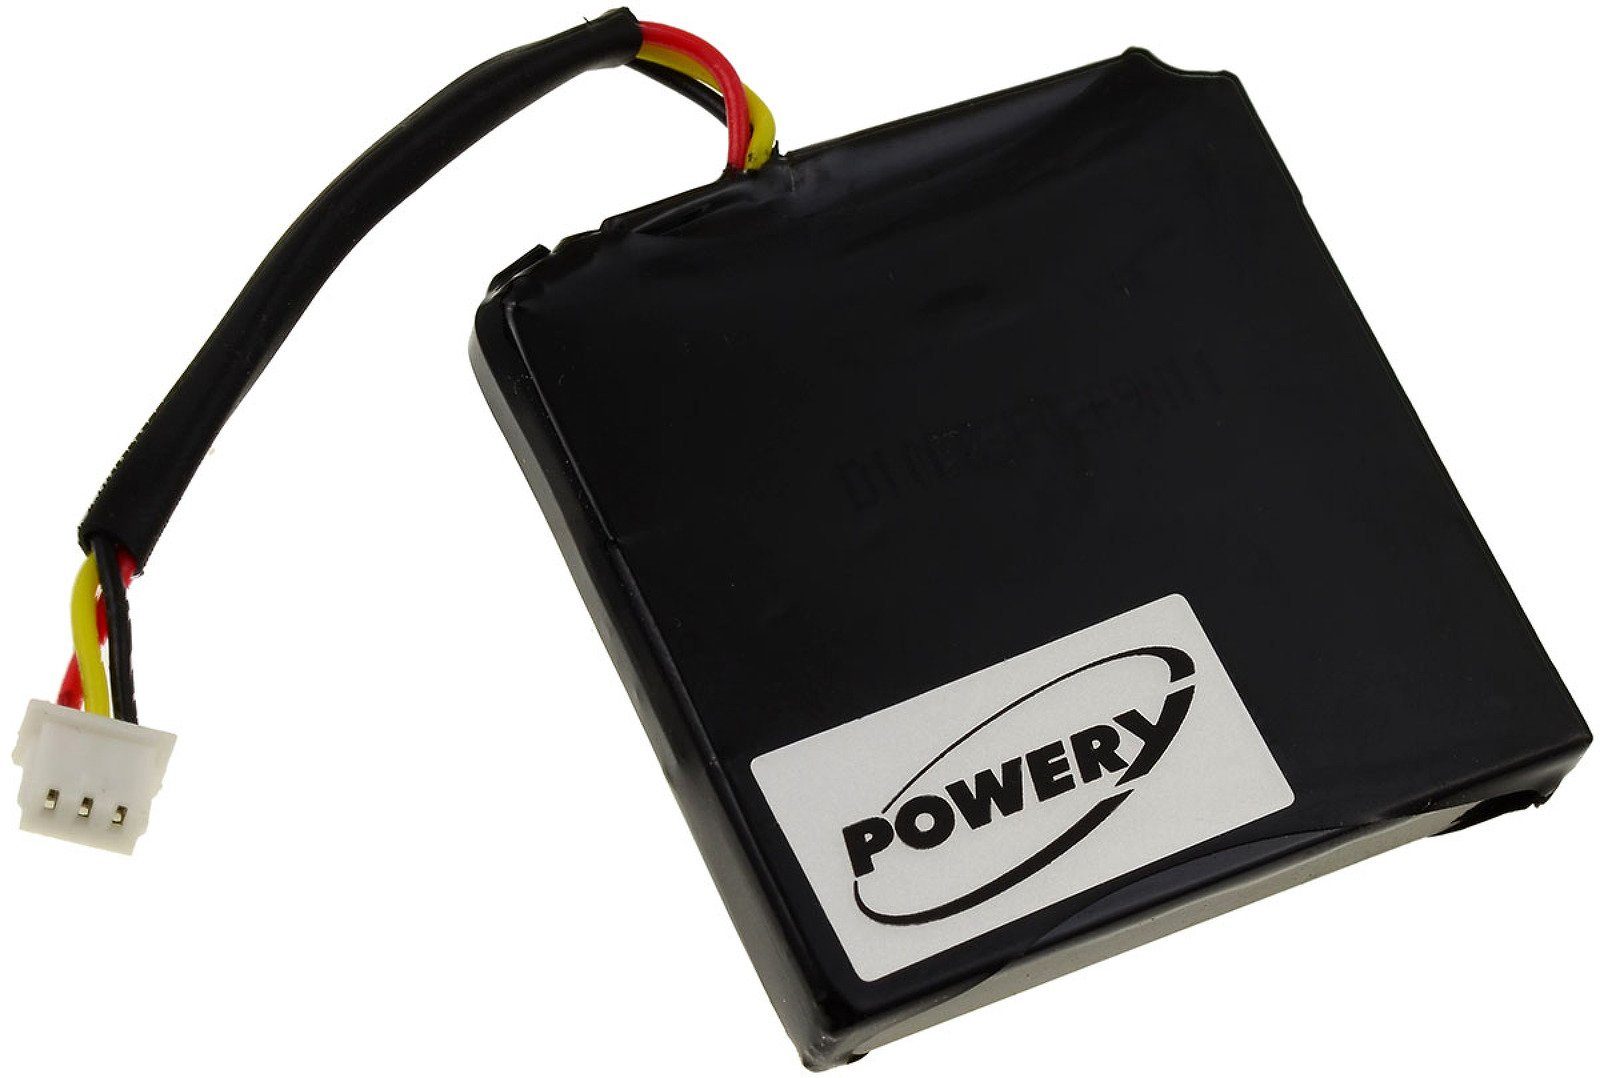 Powery Akku 700 mAh (3.7 V) | Akkus und PowerBanks